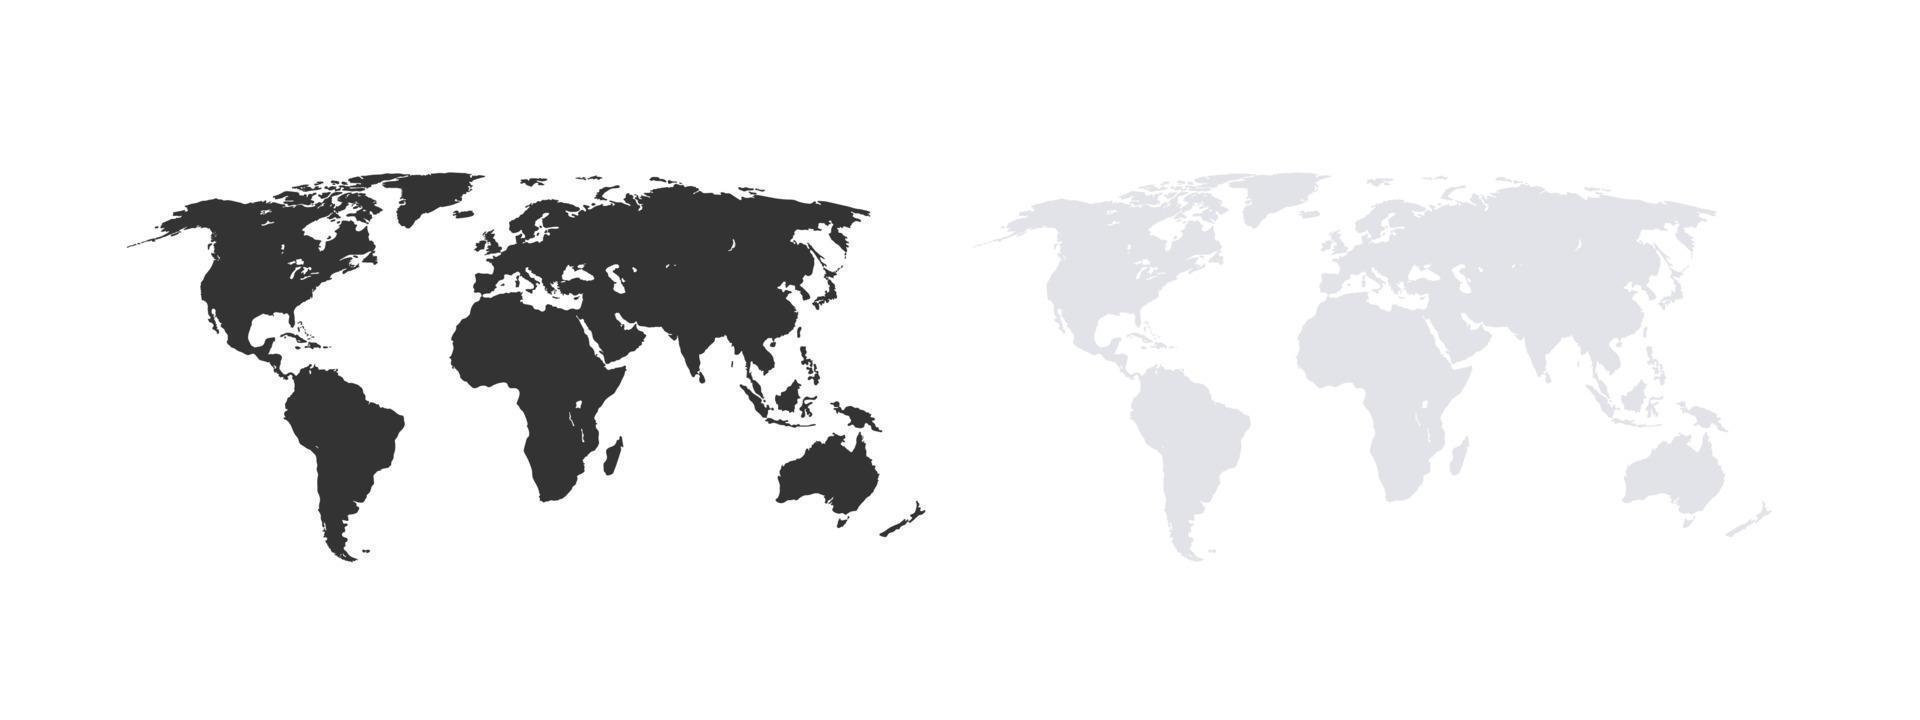 mapas do mundo. modelo de mapa do mundo. mapa do mundo terra plana. ilustração vetorial vetor